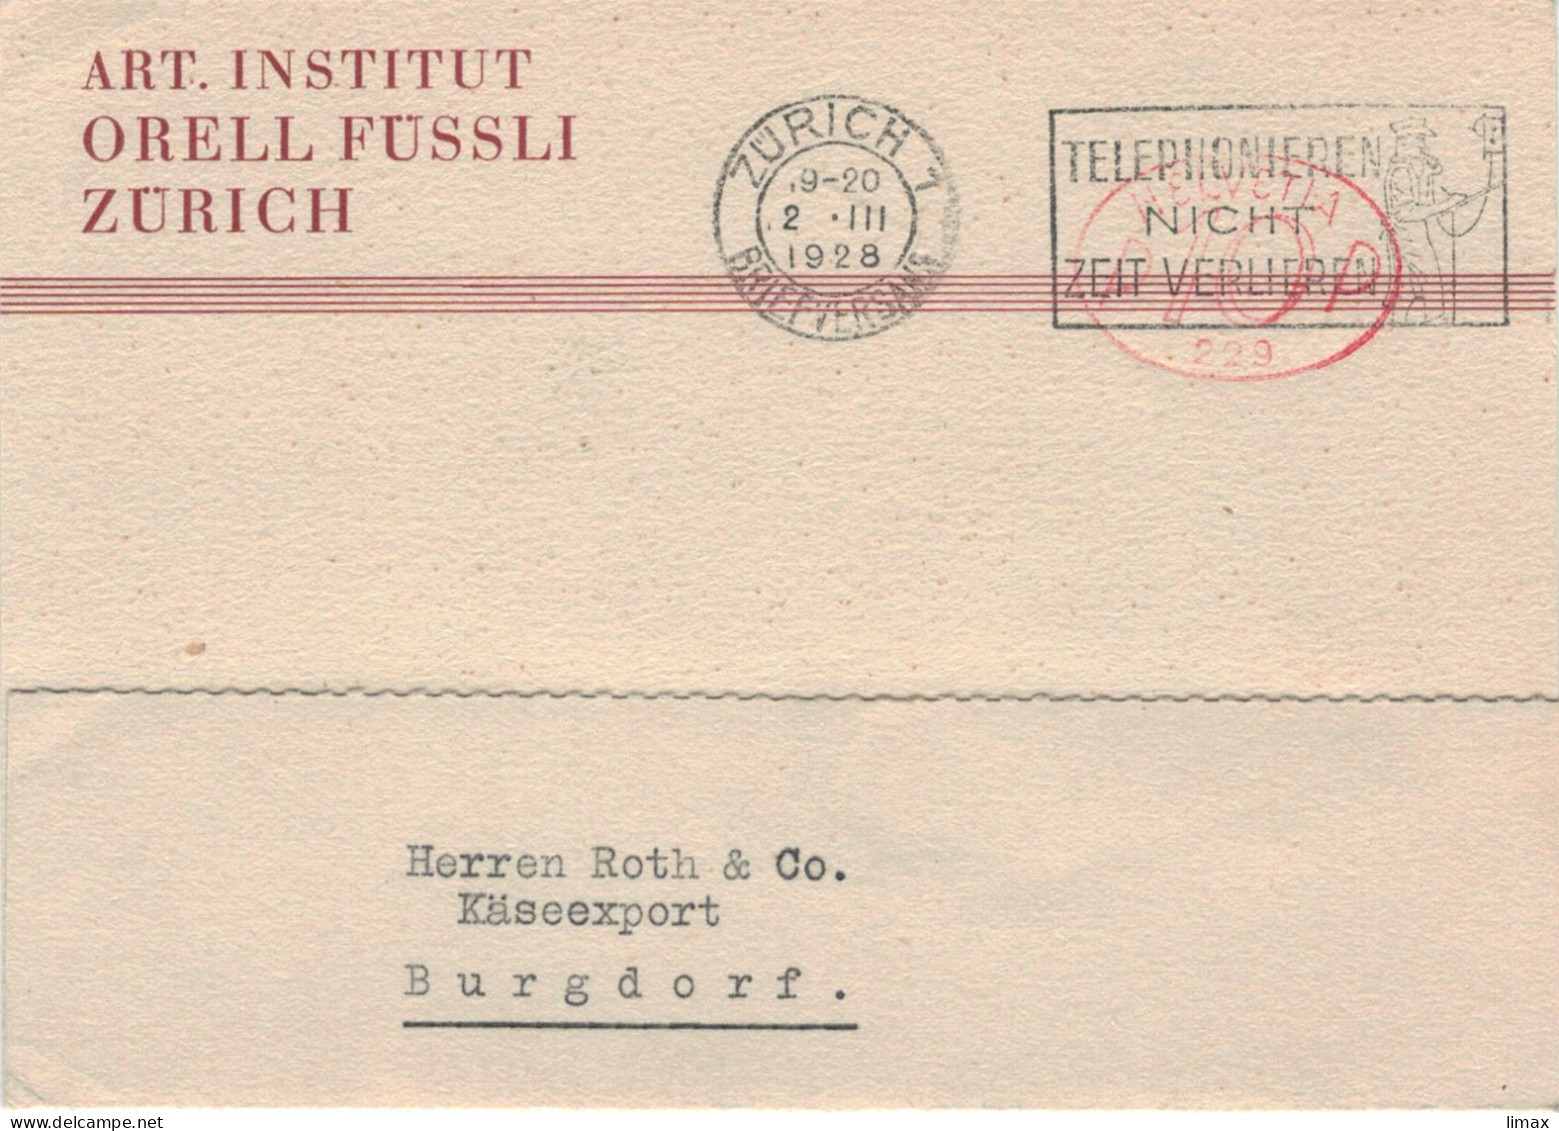 Art. Institut Orell Füssli Zürich Briefversand 1928 Hasler-Stempel No 229 - Telefonieren Nicht Zeit Verlieren > Burgdorf - Postage Meters